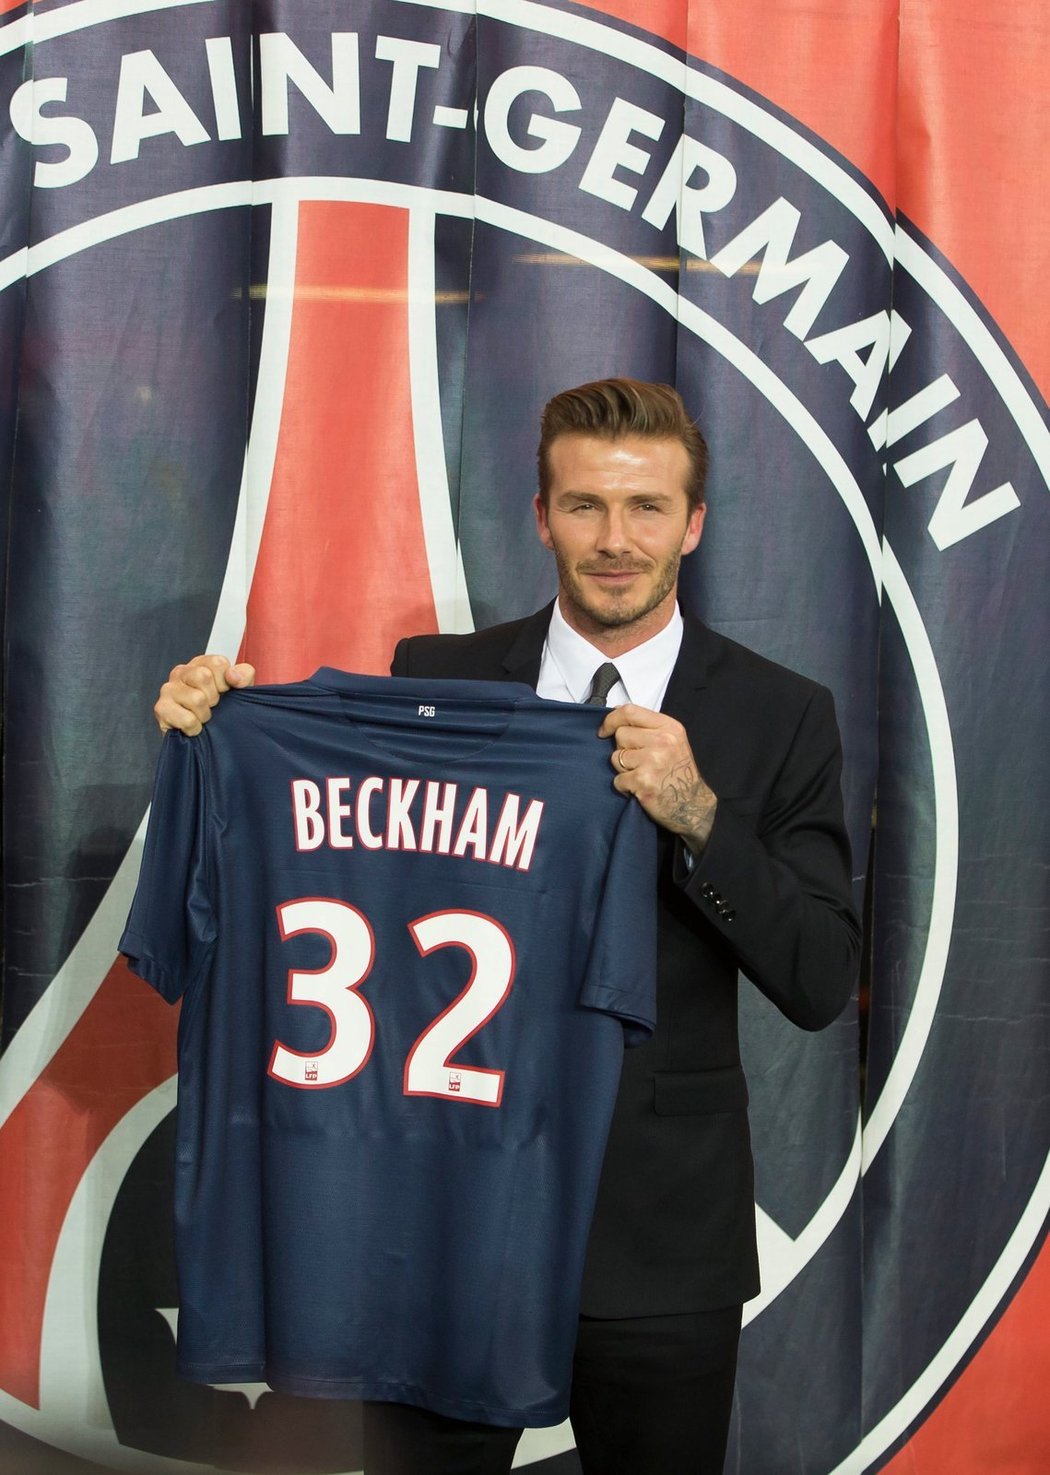 David Beckham pózuje s dresem svého nového klubu, Paris St. Germain